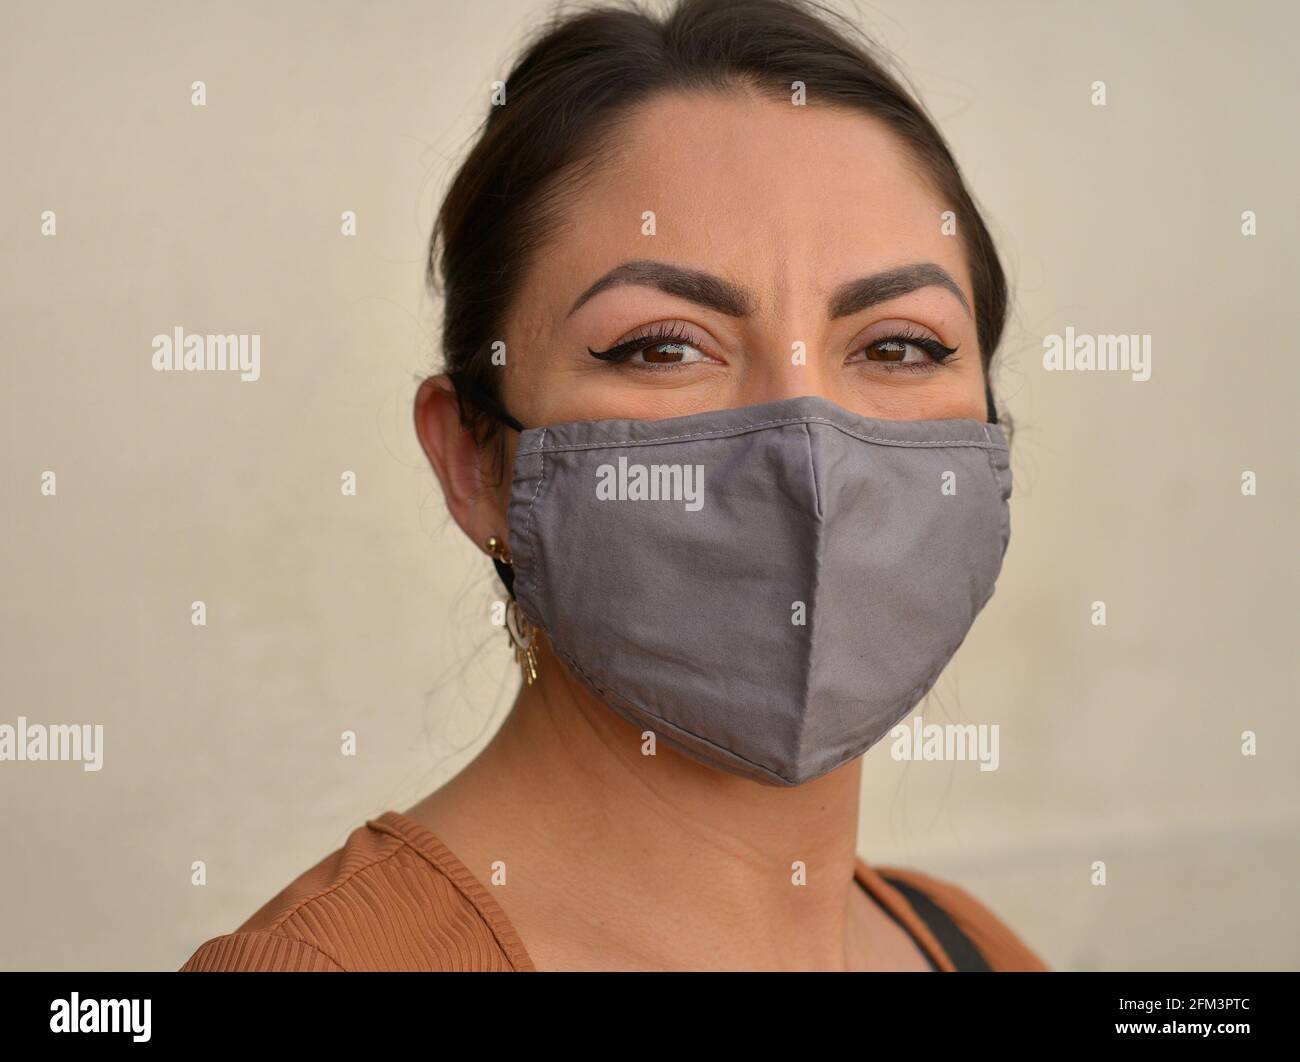 Die junge mexikanische Frau mit schönen braunen Augen und stilvollem Augen-Make-up trägt während der Corona-Virus-Pandemie eine graue Gesichtsmaske aus nicht medizinischem Stoff. Stockfoto